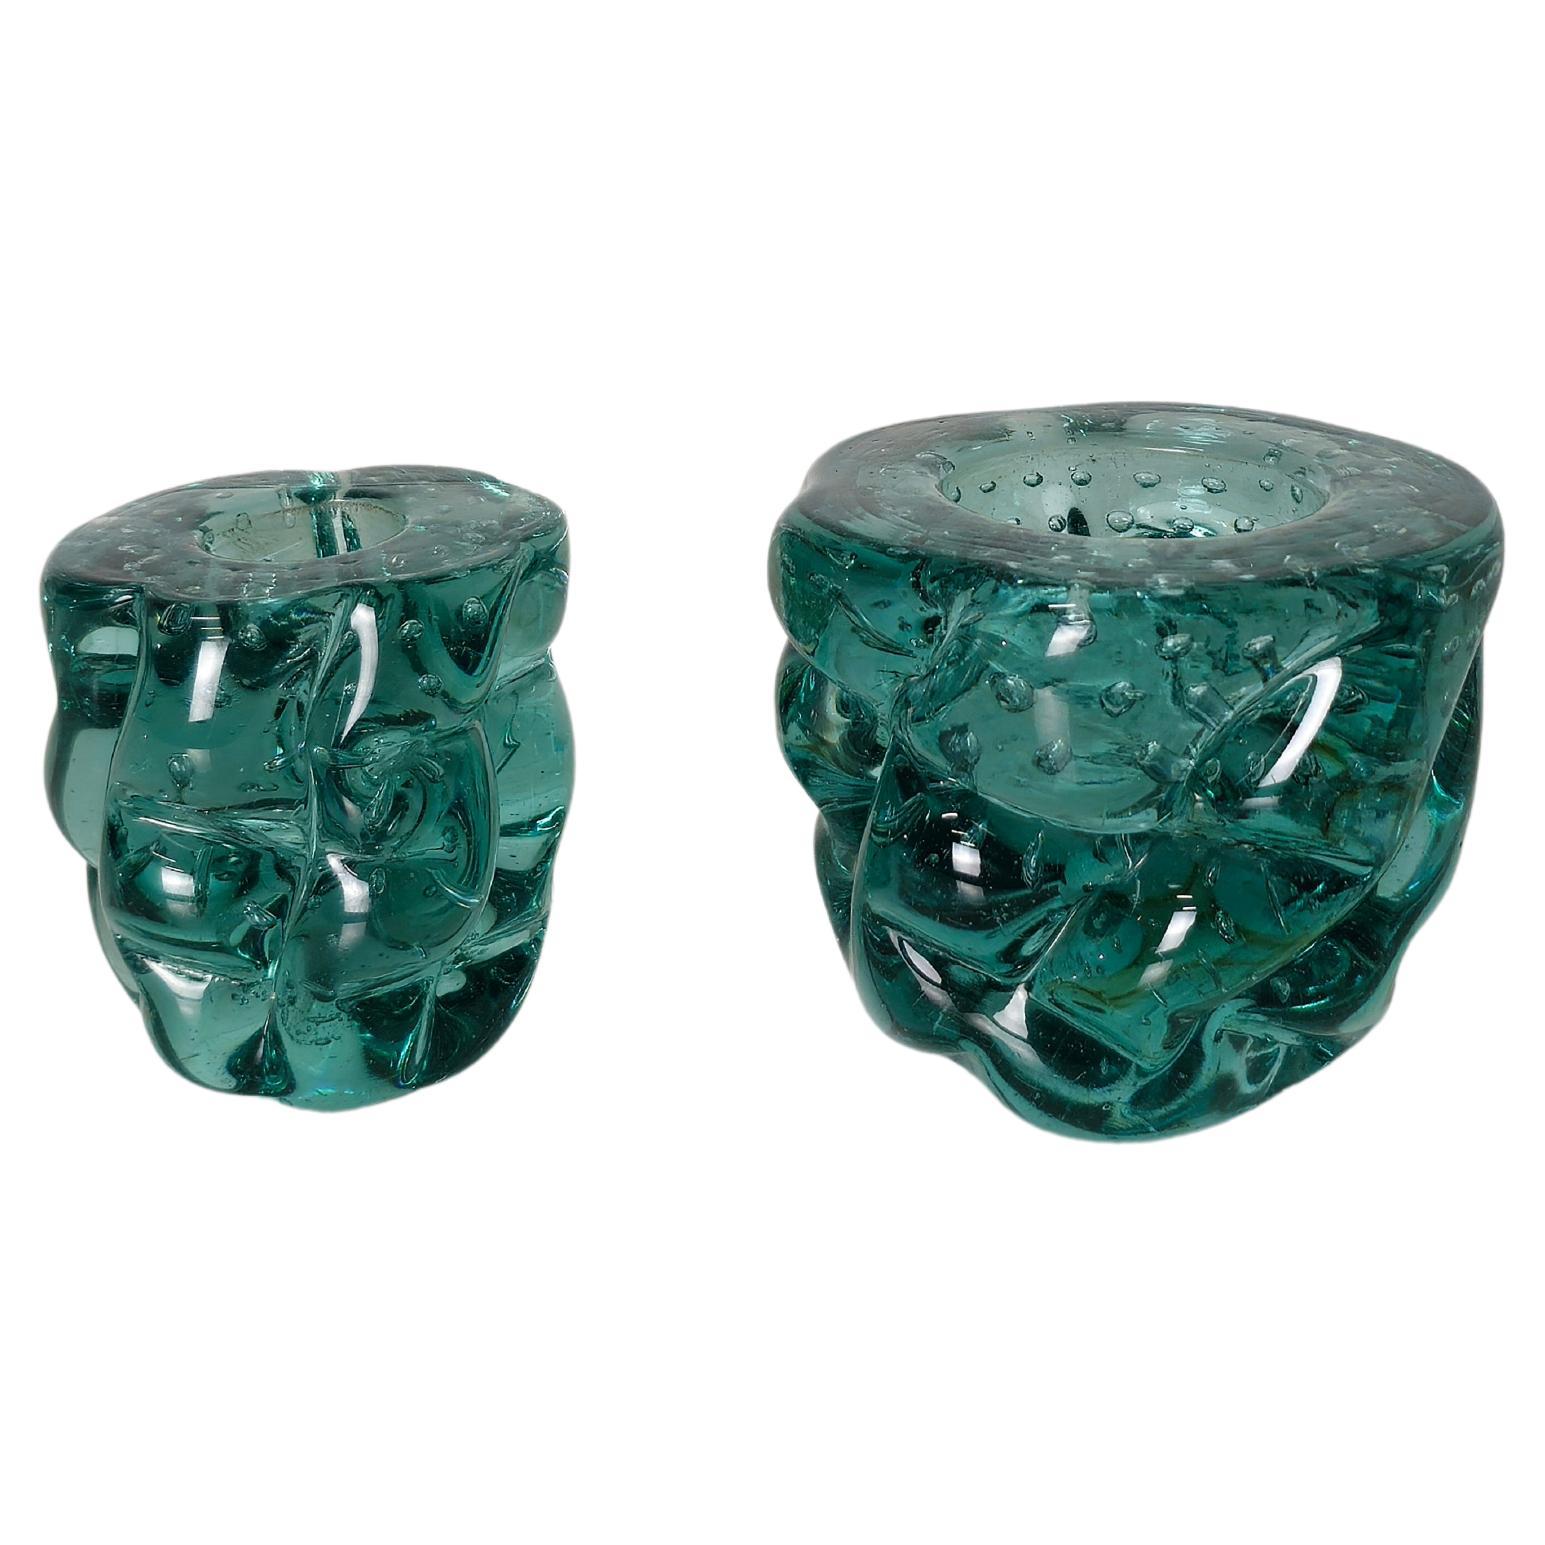 Satz von 2 dekorativen Objekten/kleinen Vasen aus bullicante Murano-Glas in aquagrünen Farbtönen. Sie wurde in den 1960er Jahren von der renommierten Firma Seguso in Murano hergestellt.



Hinweis: Wir bemühen uns, unseren Kunden auch bei Sendungen